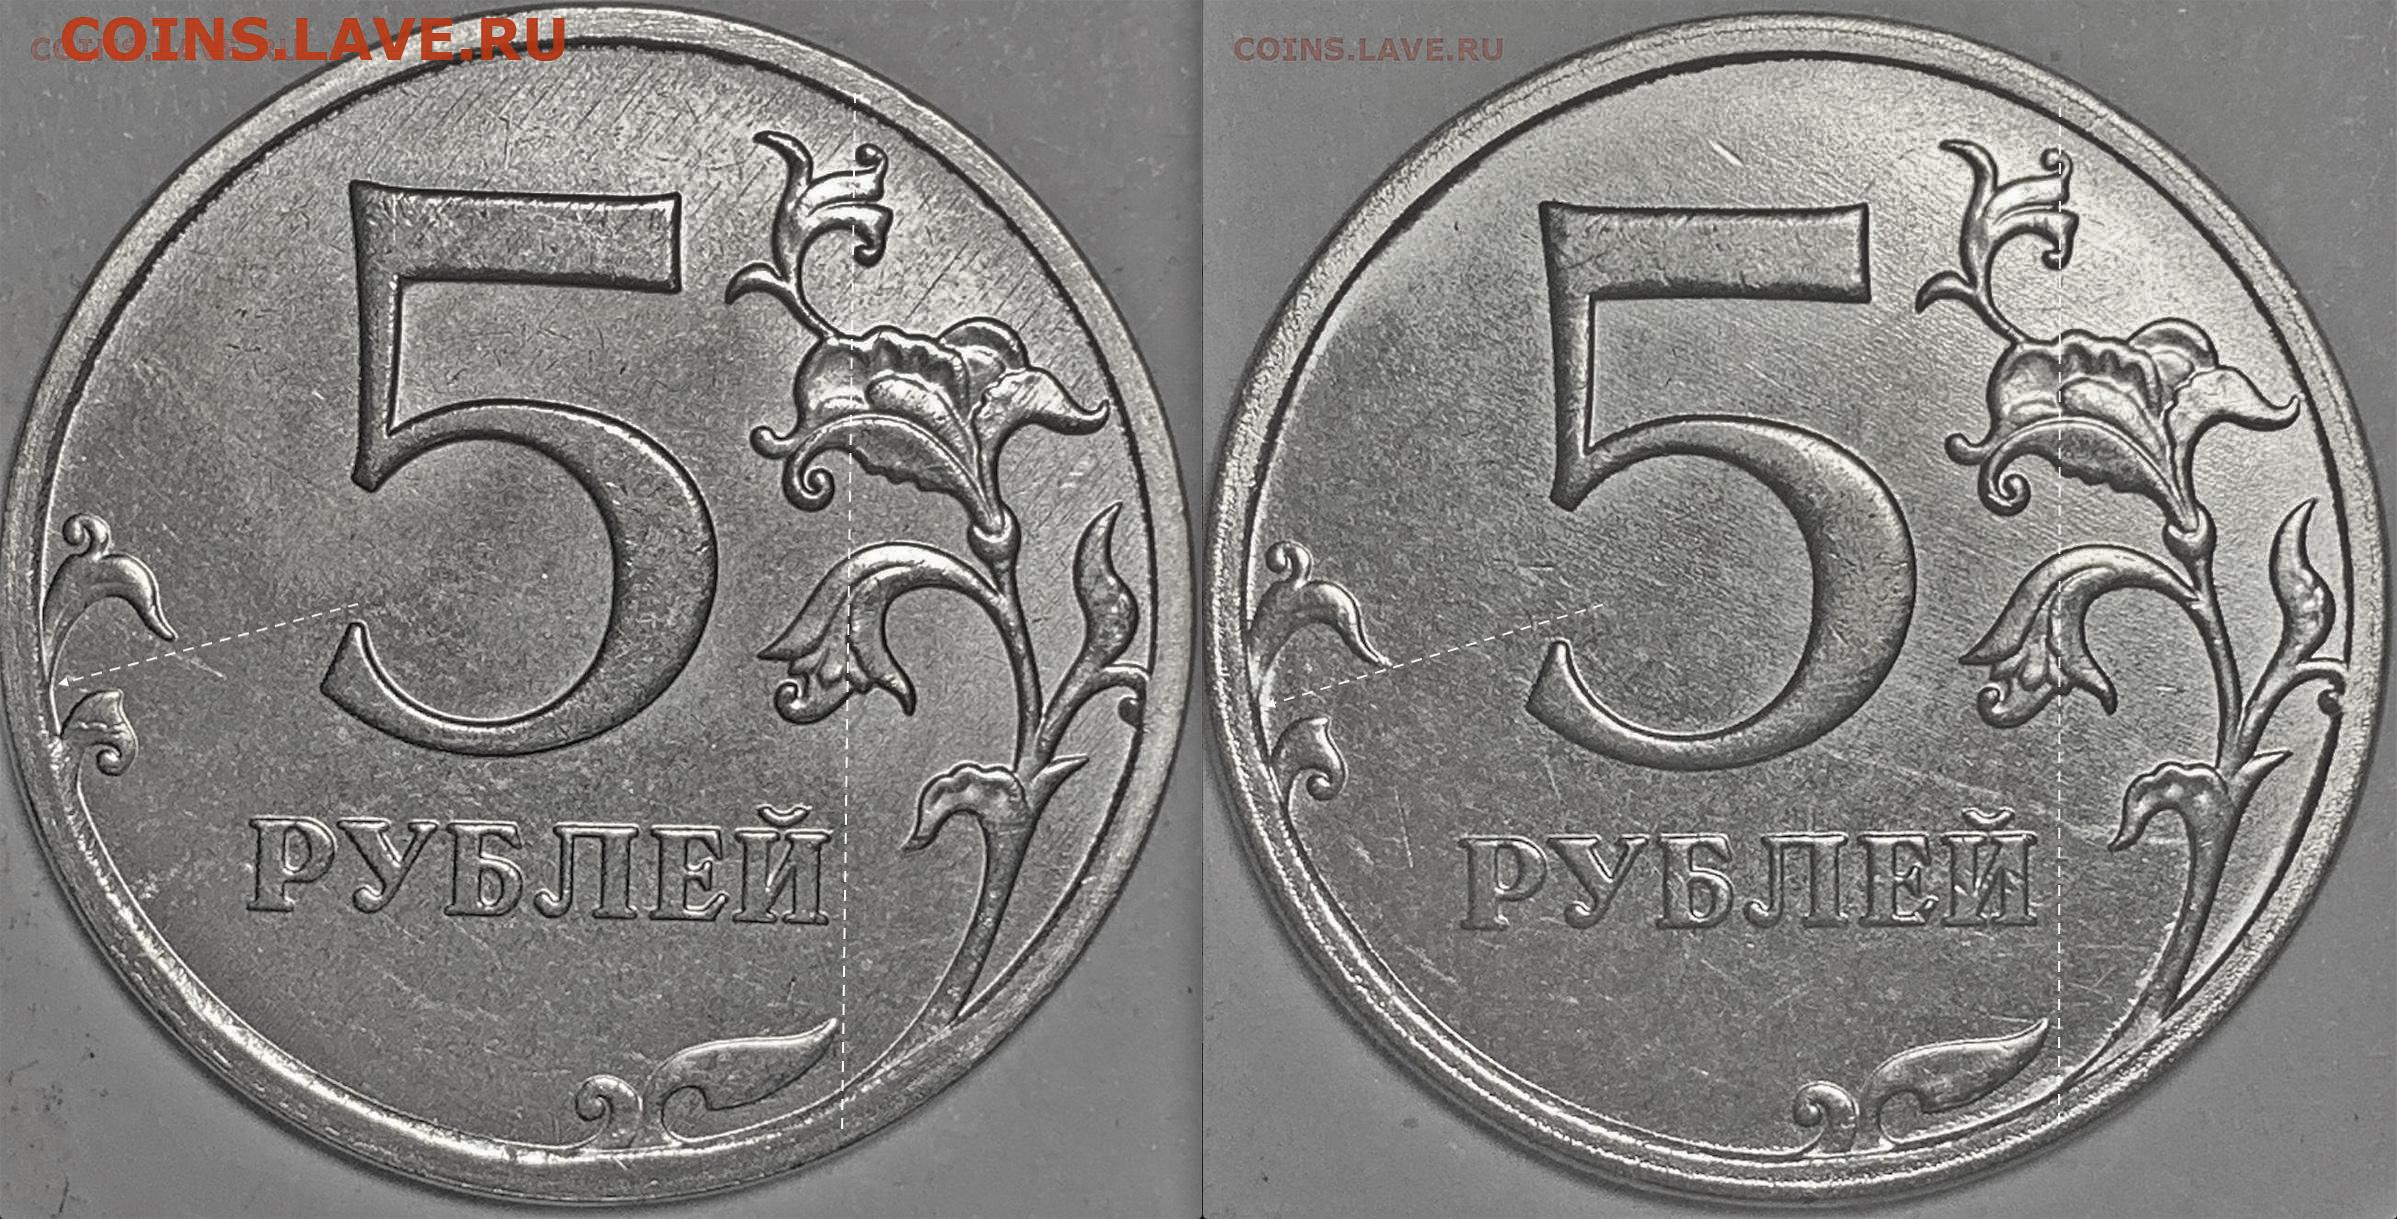 75 рублей 60. 5 Рублей 2021 года. Разновидности 5 рублей 2021 года. Монета 20 рублей 2021. 5 Рублей 2021 характеристики.